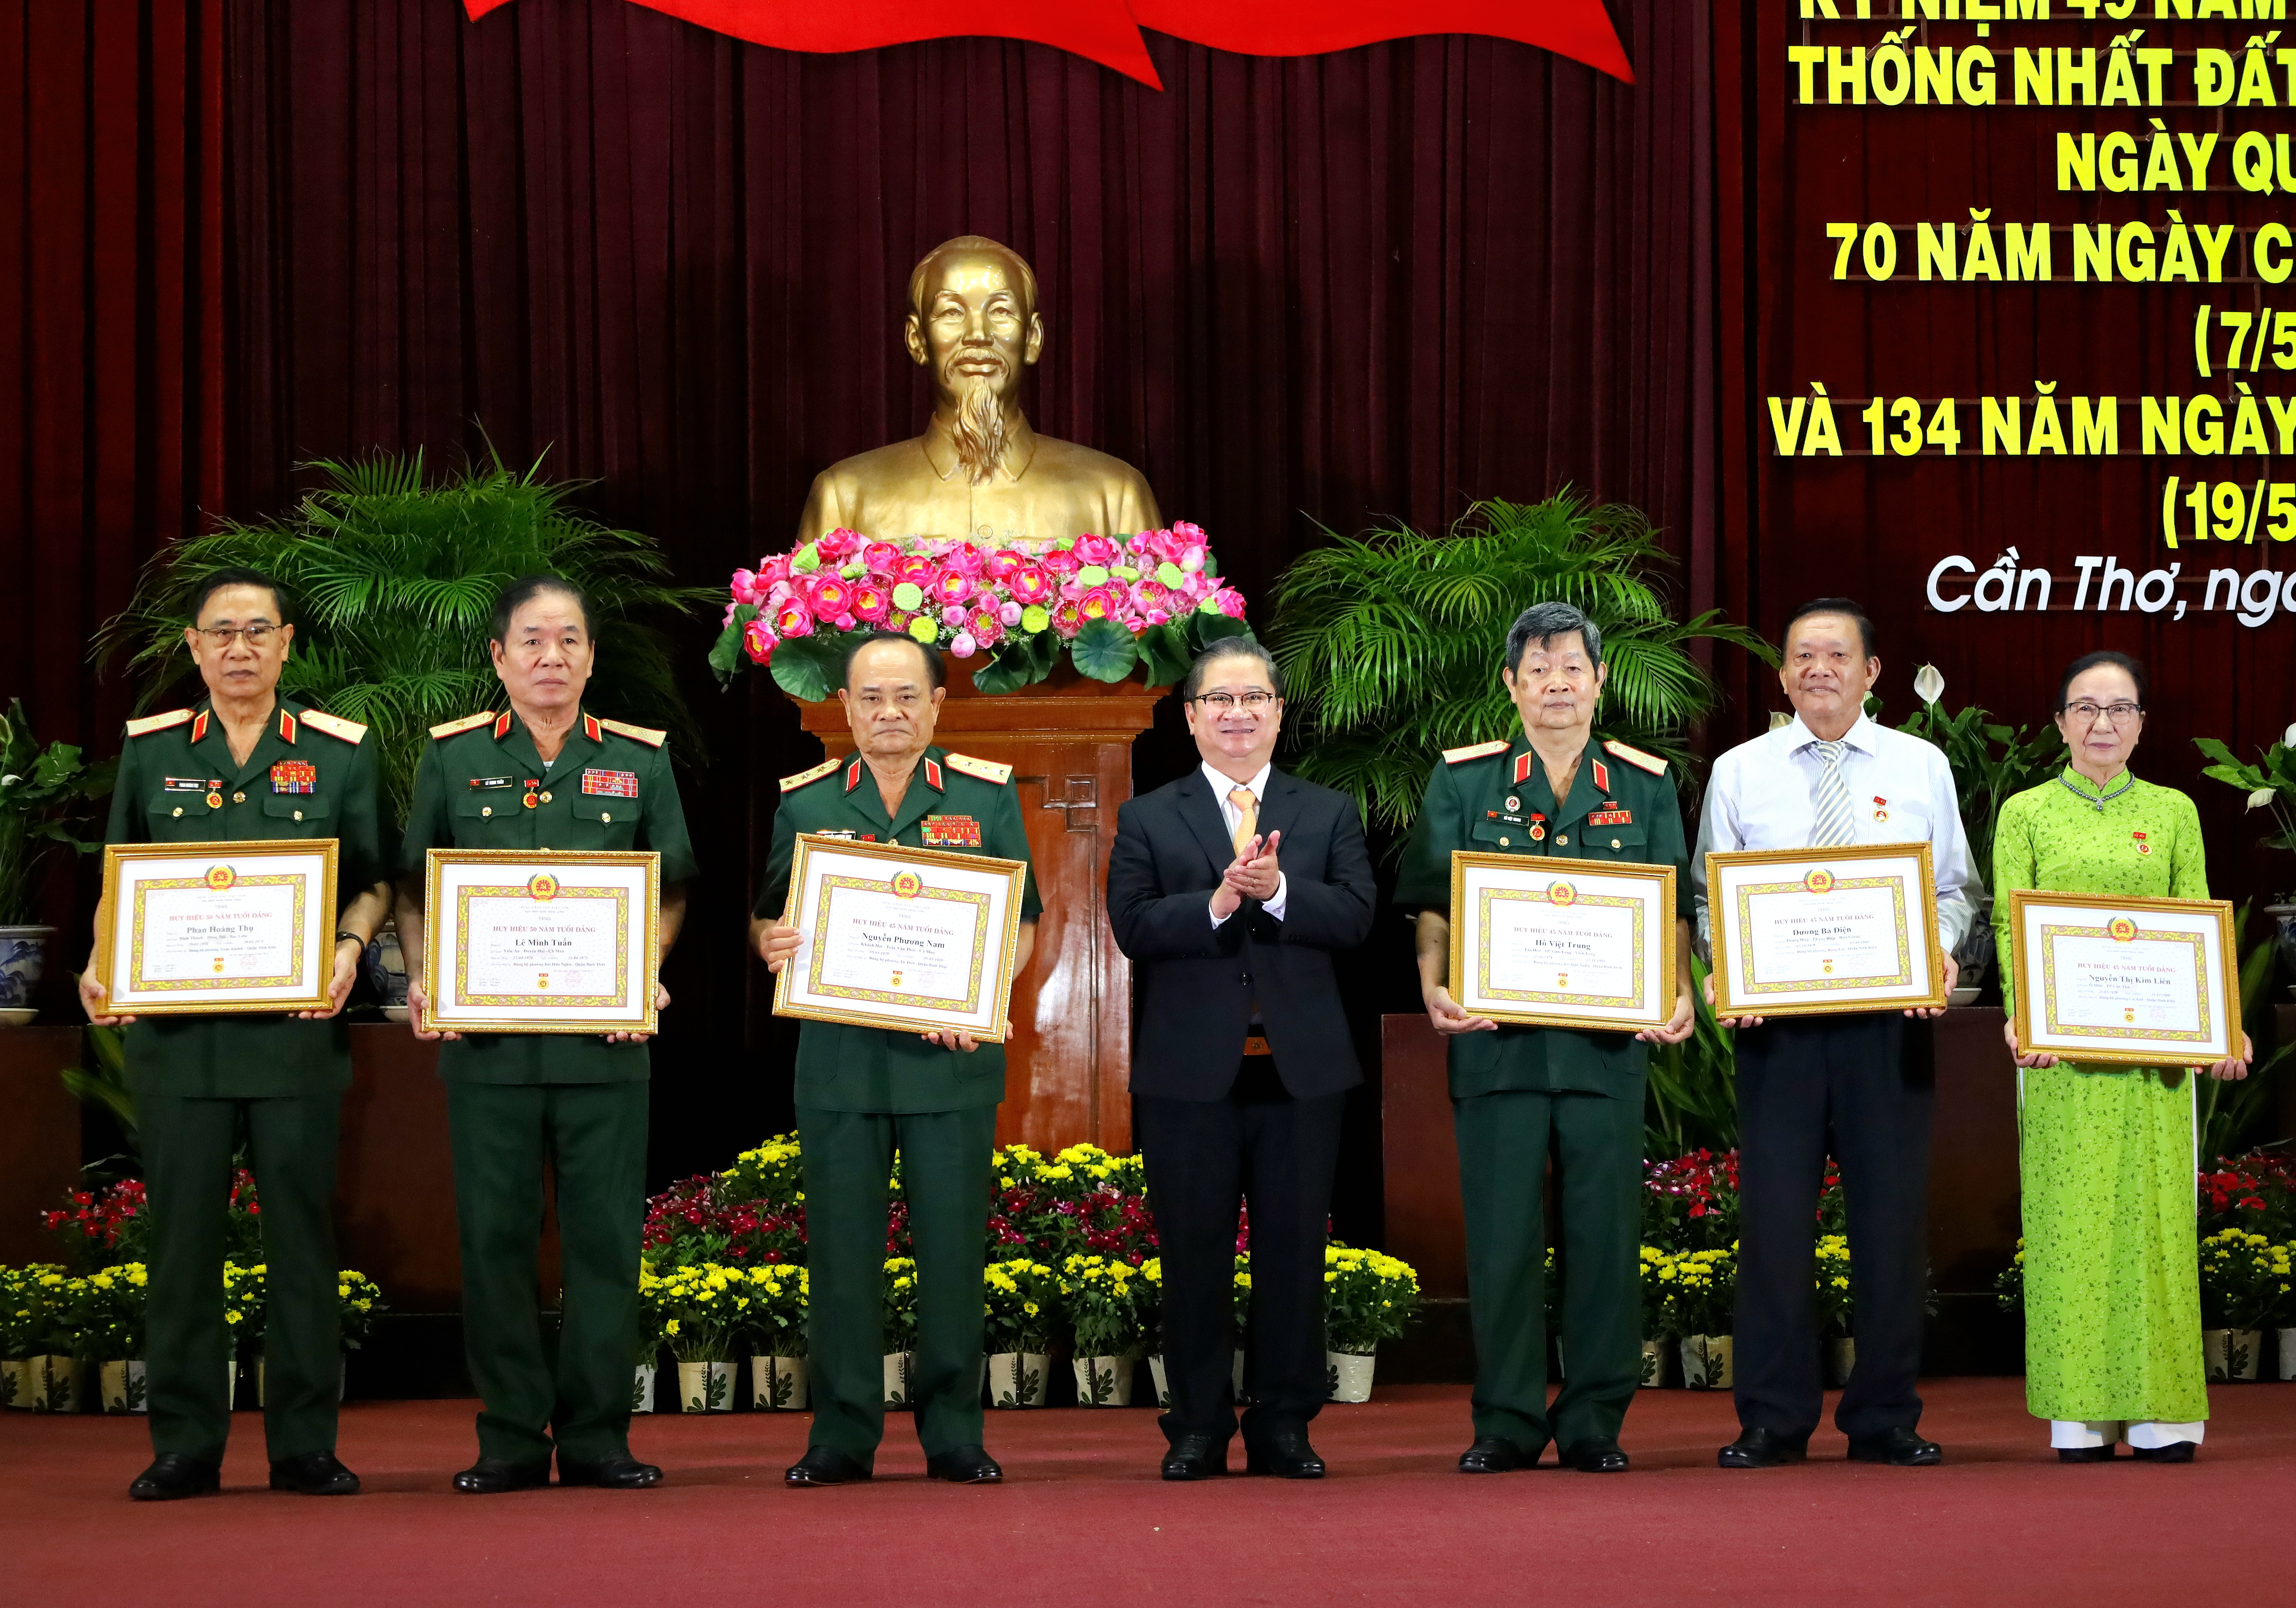 Ông Trần Việt Trường - Phó Bí thư Thành uỷ, Chủ tịch UBND TP. Cần Thơ trao tặng Huy hiệu Đảng cho các Đảng viên cao niên tuổi Đảng.